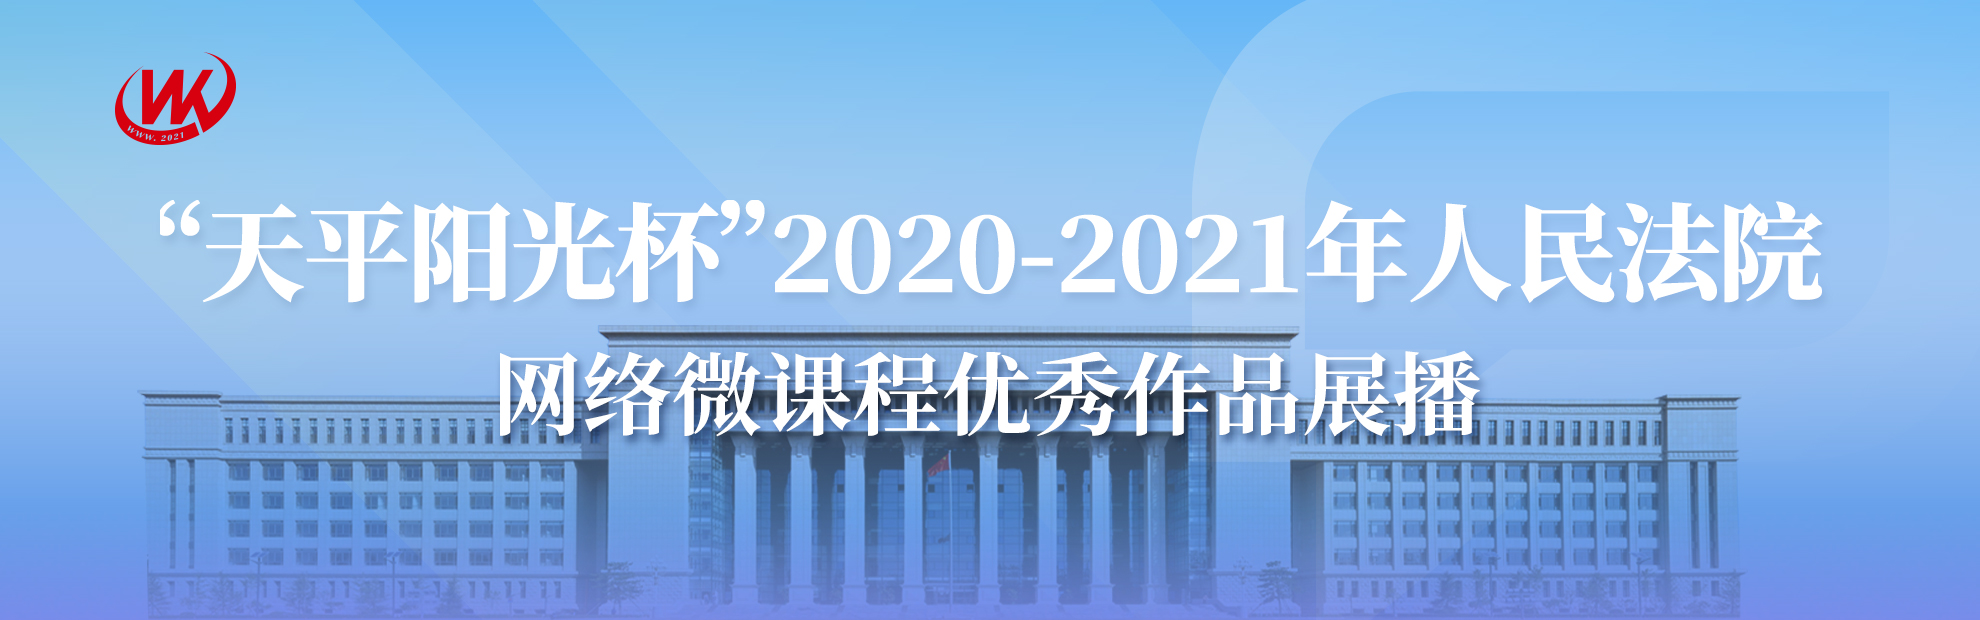 天平阳光杯 2020-2021年人民法院 网络微课程优秀作品展播